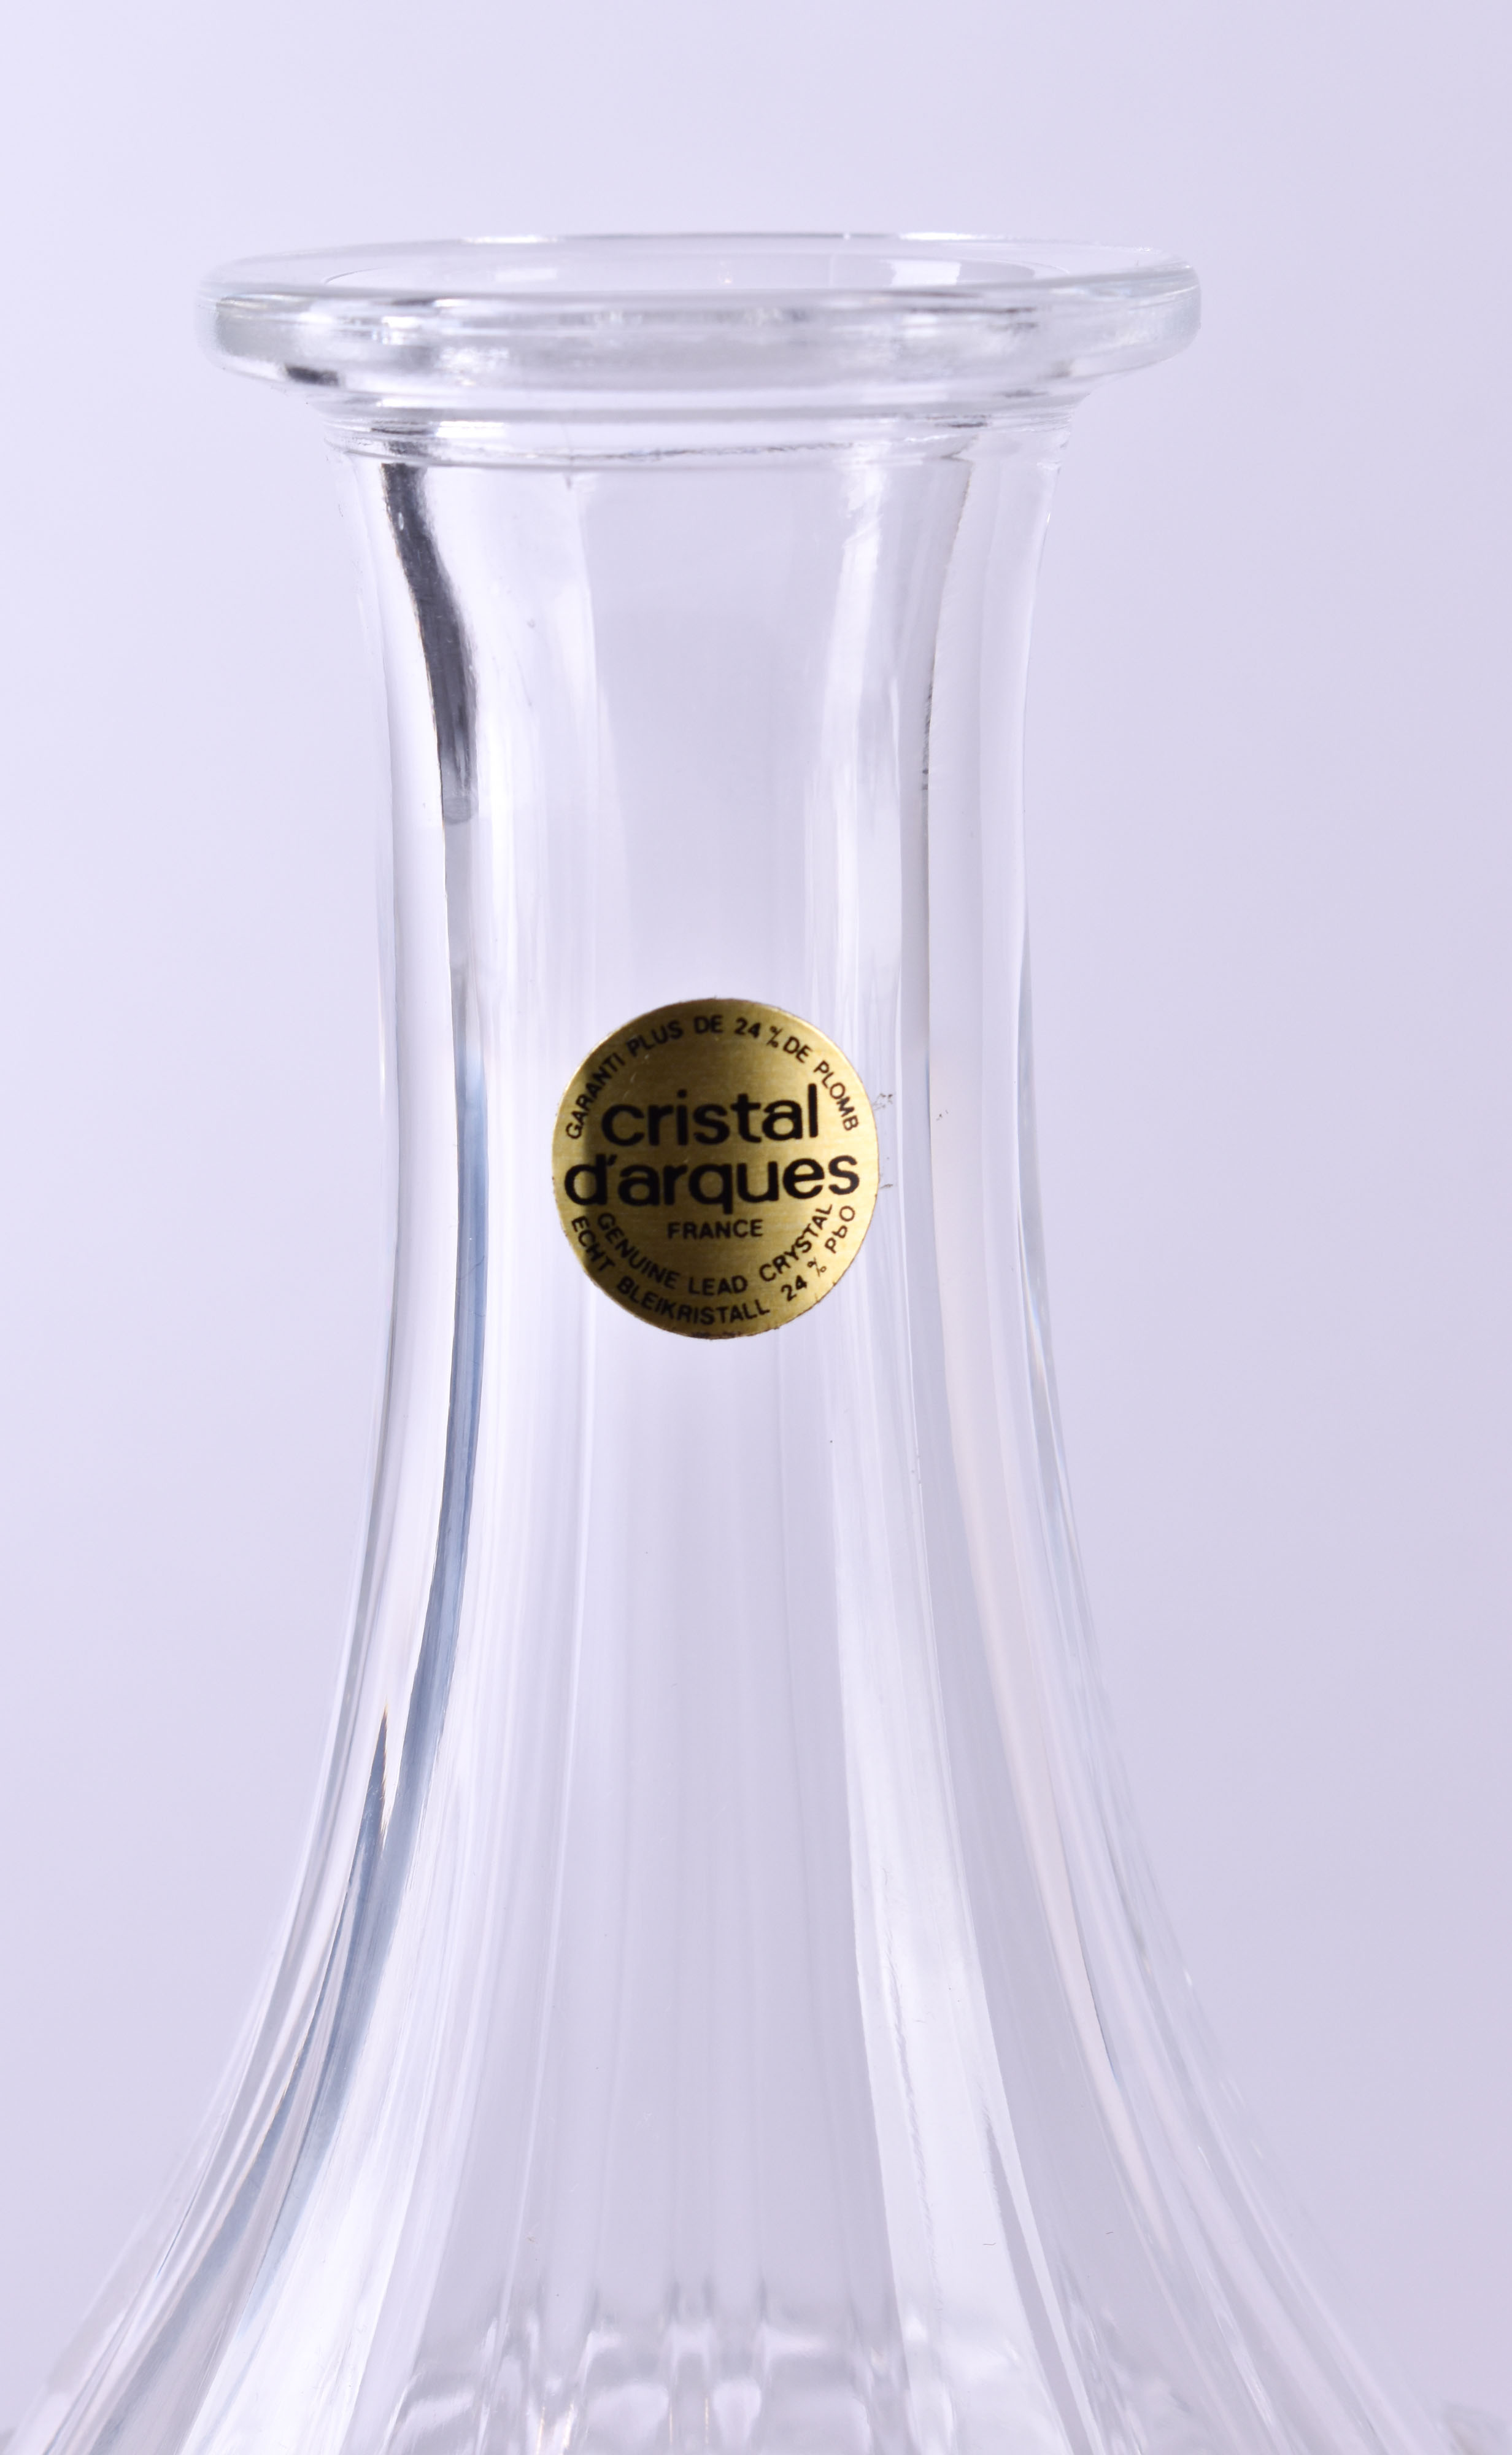 Cristal d'Arques liqueur carafe - Image 2 of 3